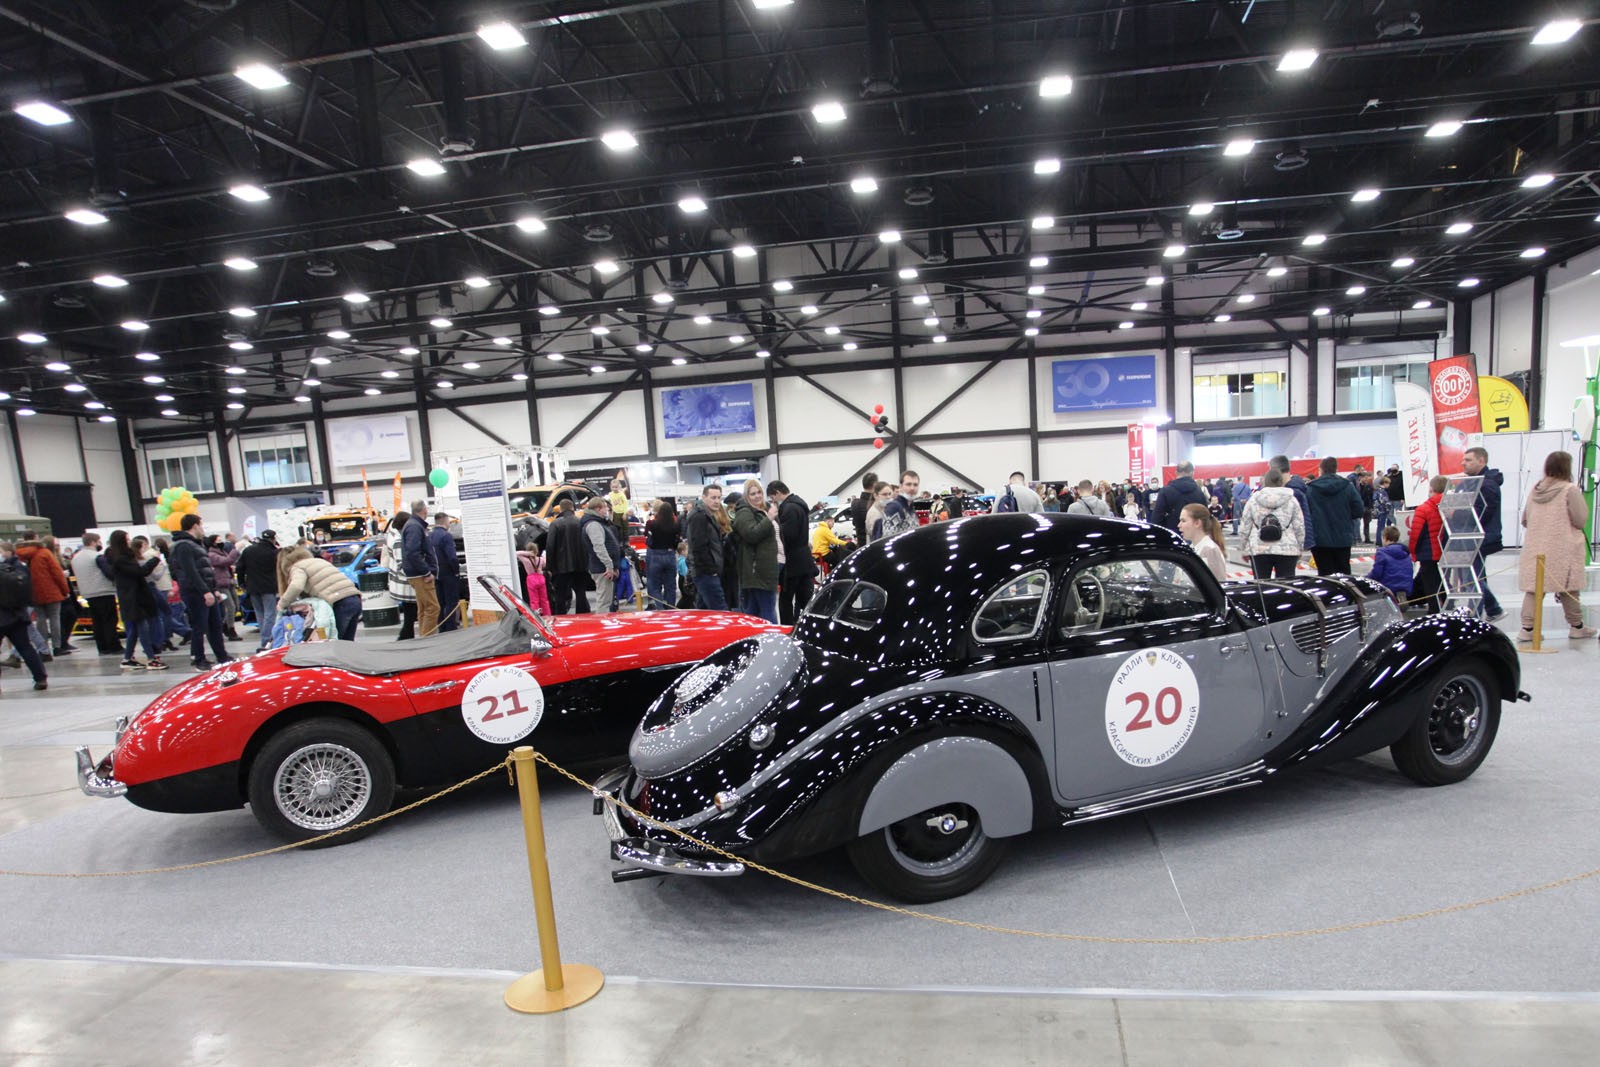 С 22 по 24 апреля в КВЦ «Экспофорум» состоится 31-я выставка старинных автомобилей «Олдтаймер-Галерея»